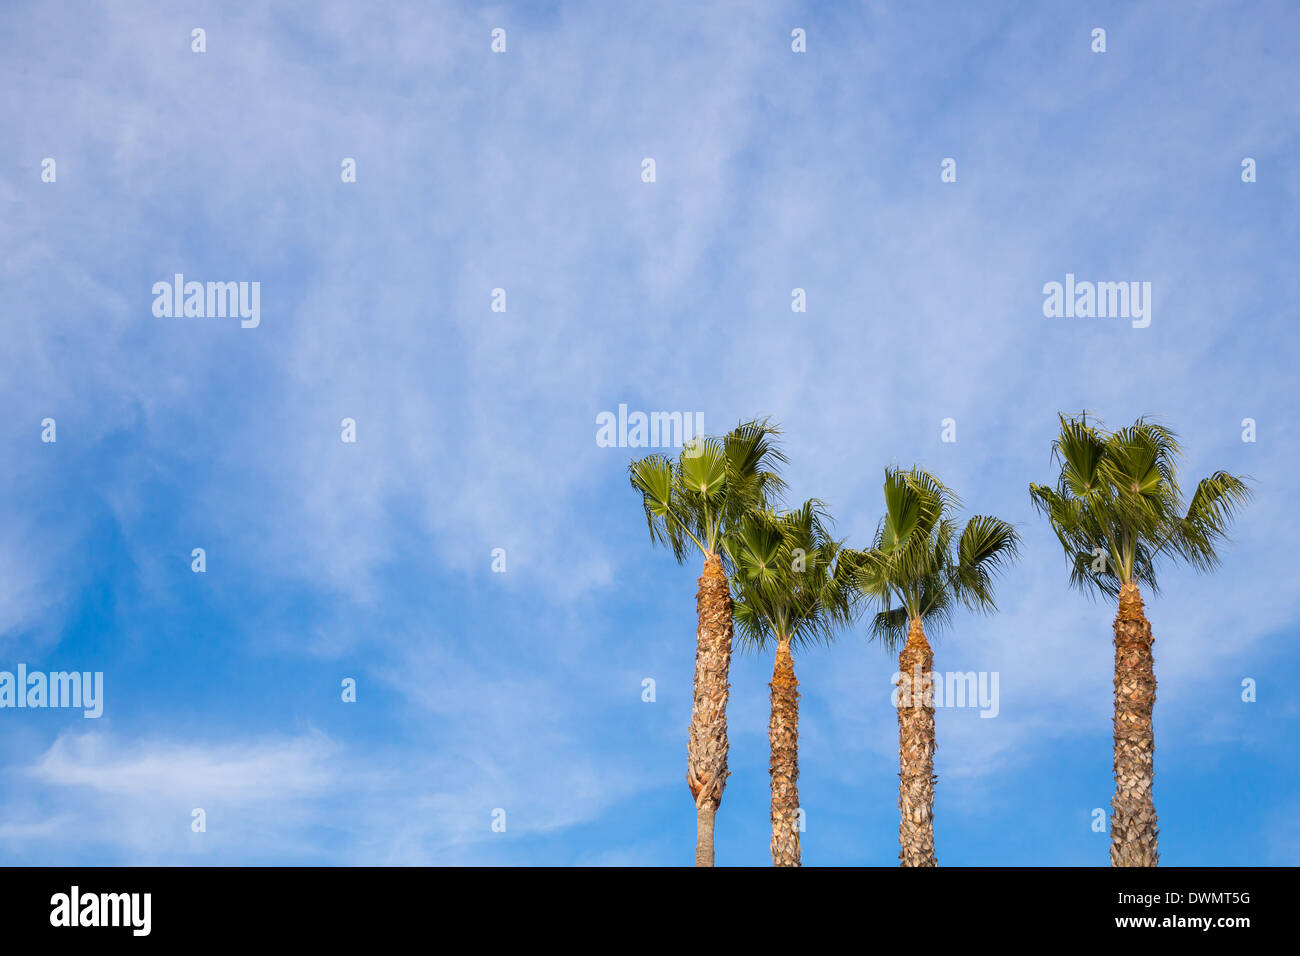 Semplice immagine a colori di alberi di palma contro un cielo blu in tropicale di san Diego in California. Foto Stock